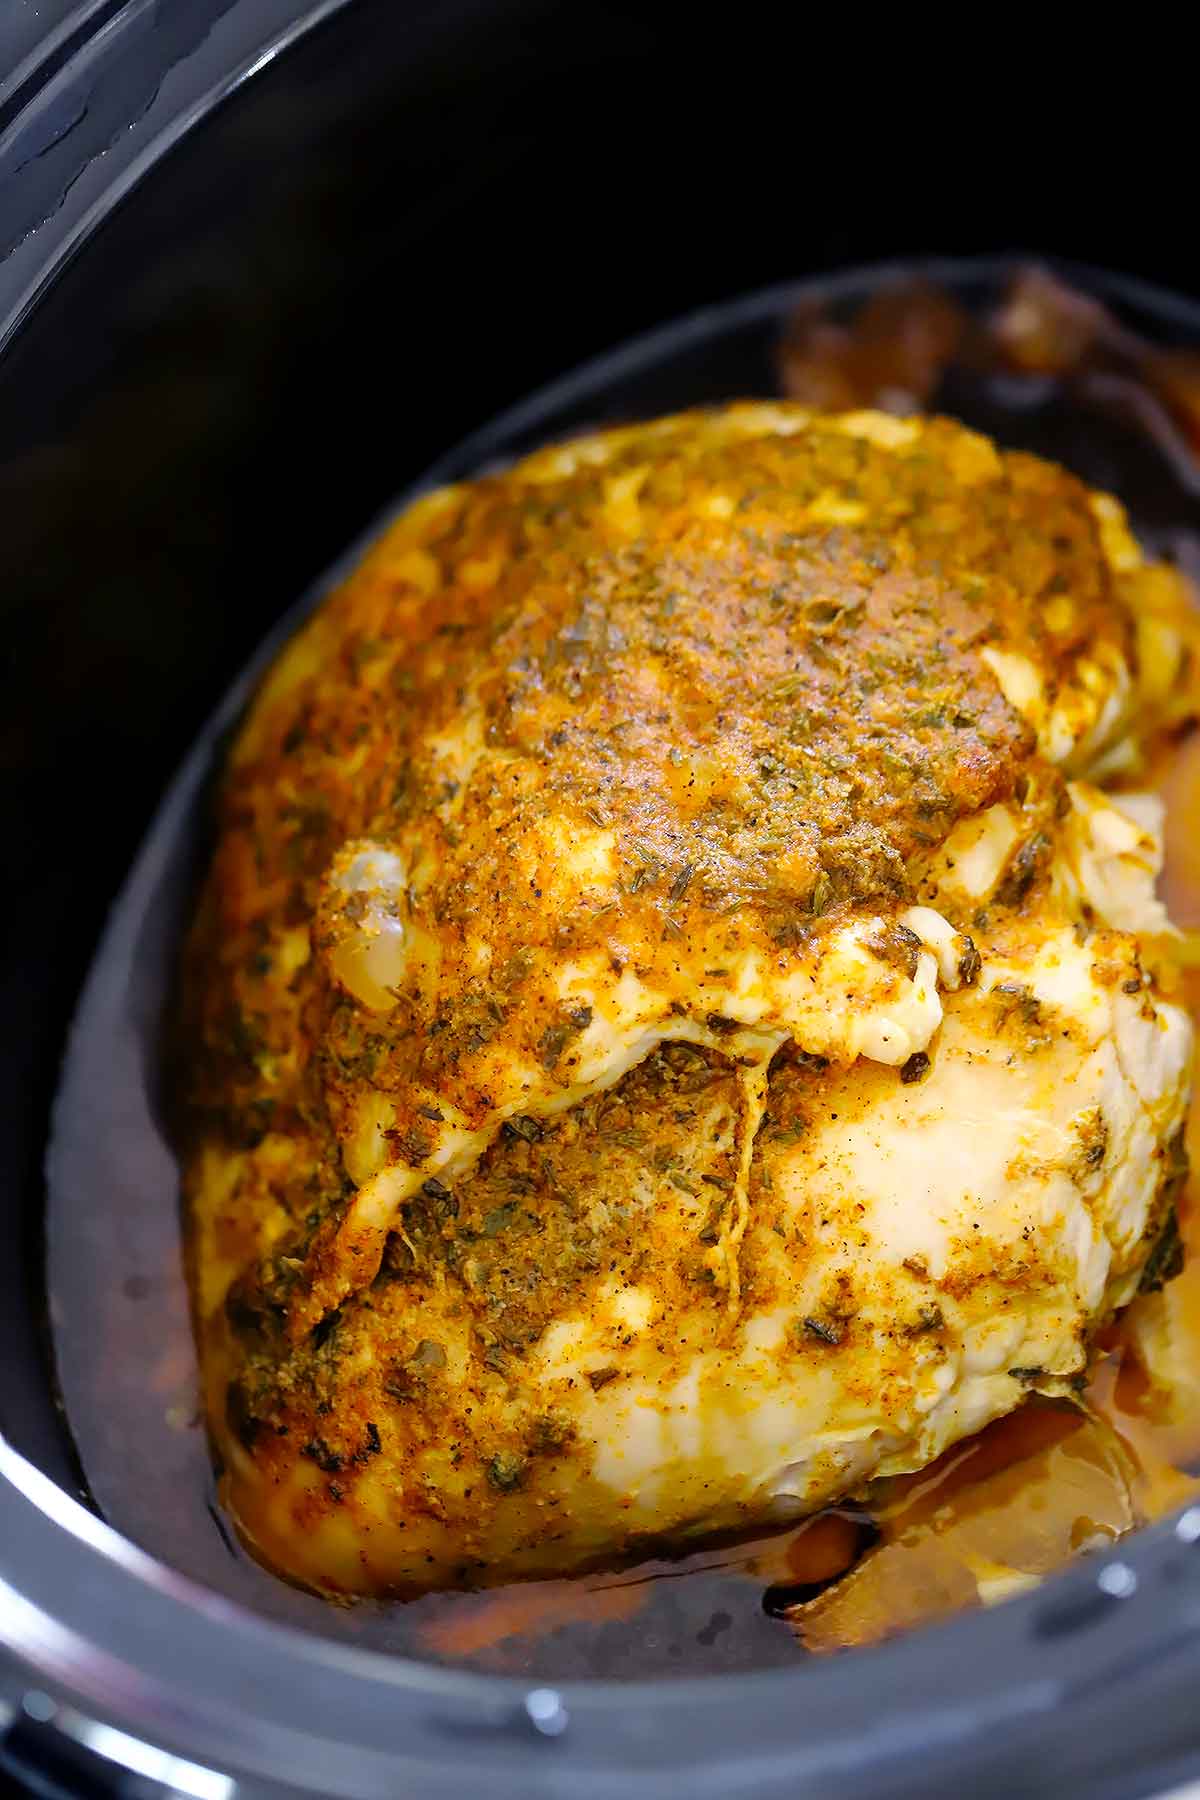 A whole boneless turkey breast in a slow cooker.